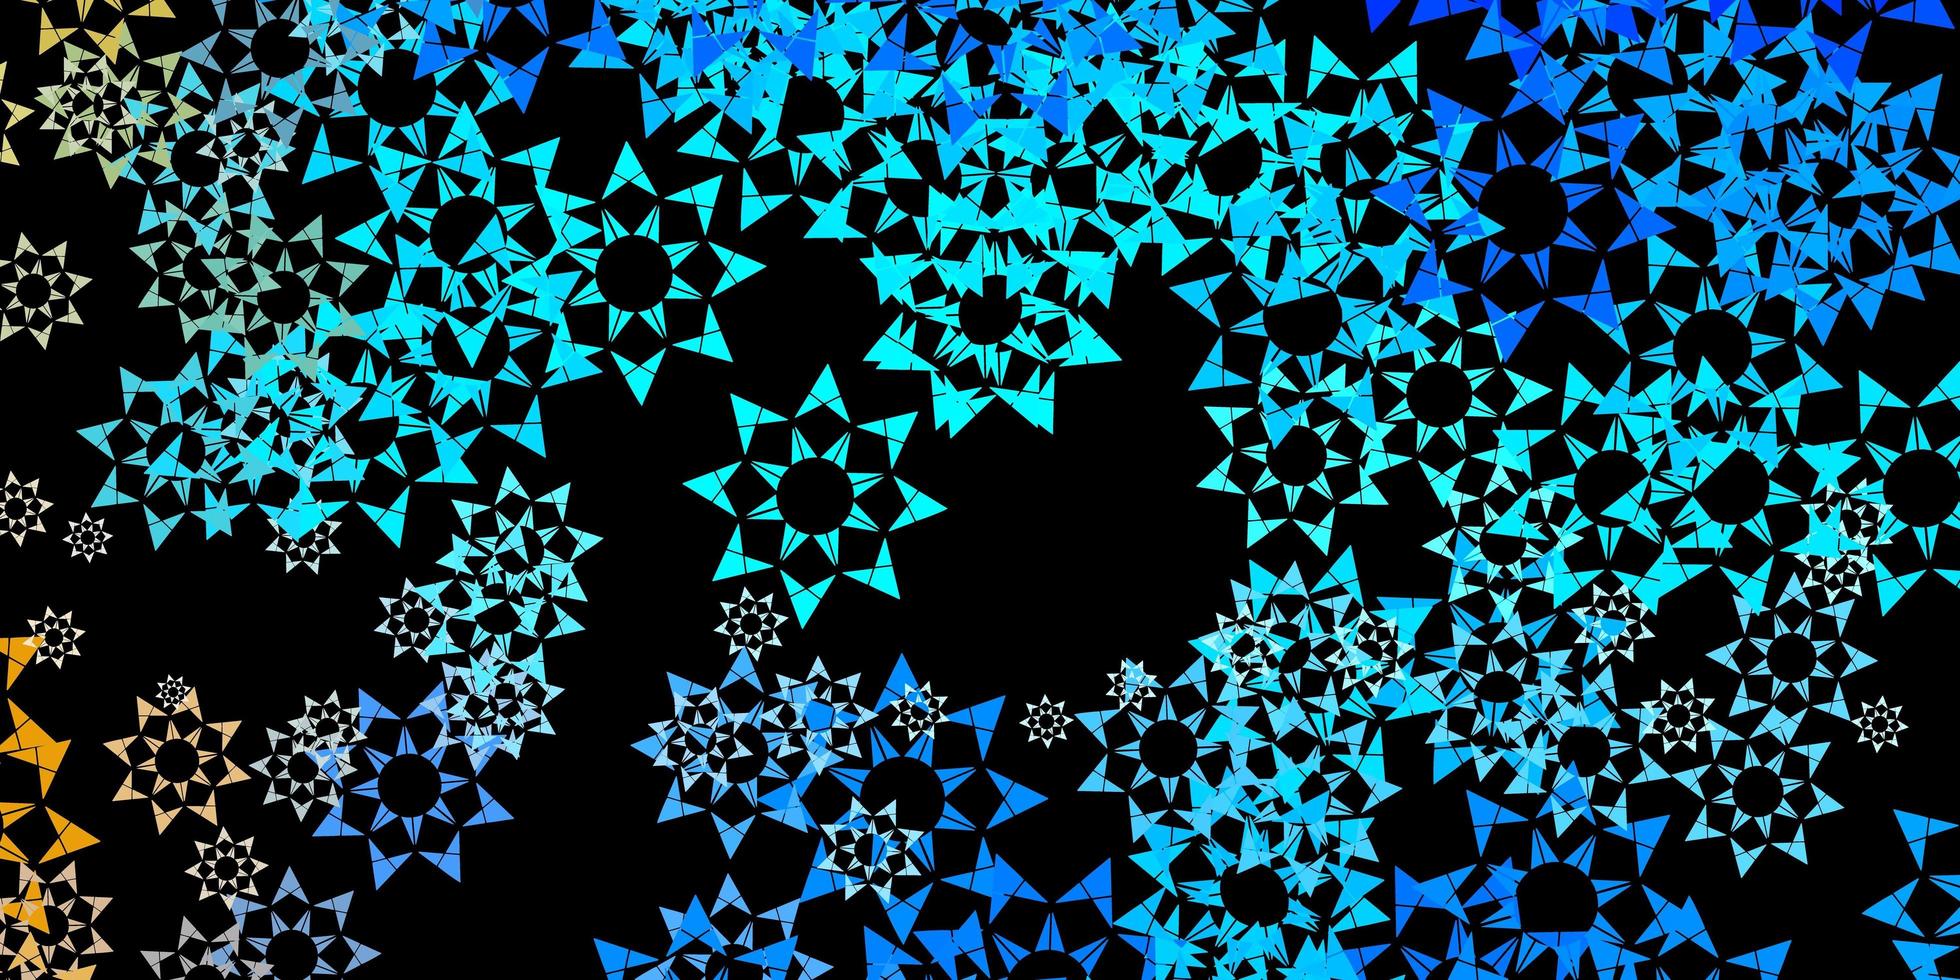 fond de vecteur bleu foncé avec des triangles.